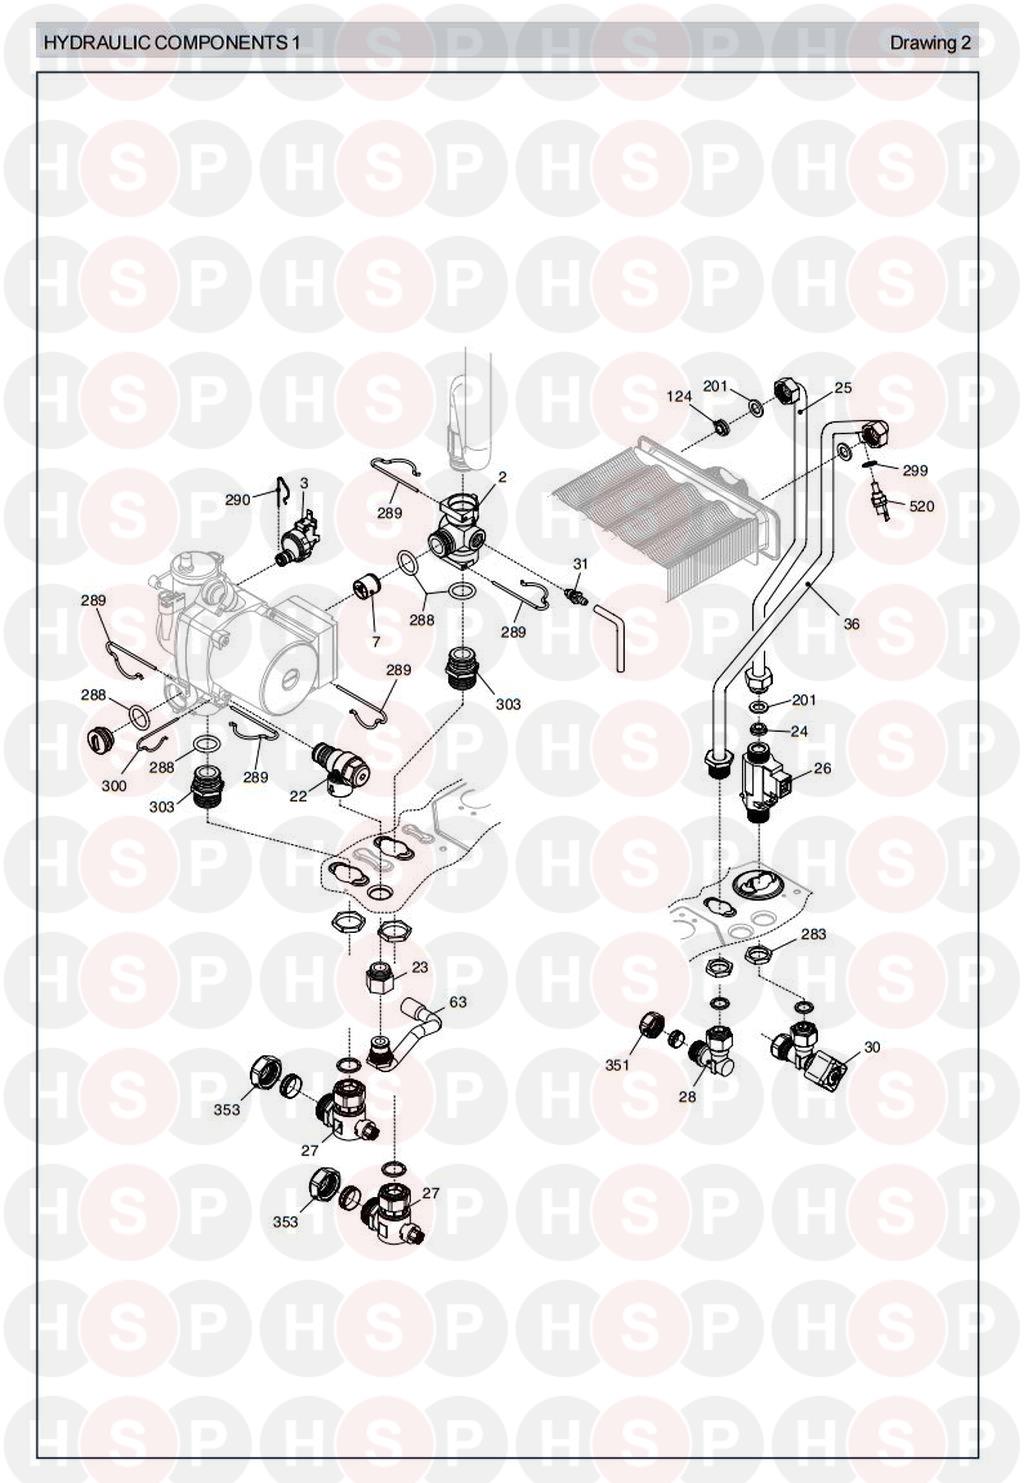 Hydraulics 1 diagram for Vokera Sabre 28 Rev 3 (01/08)